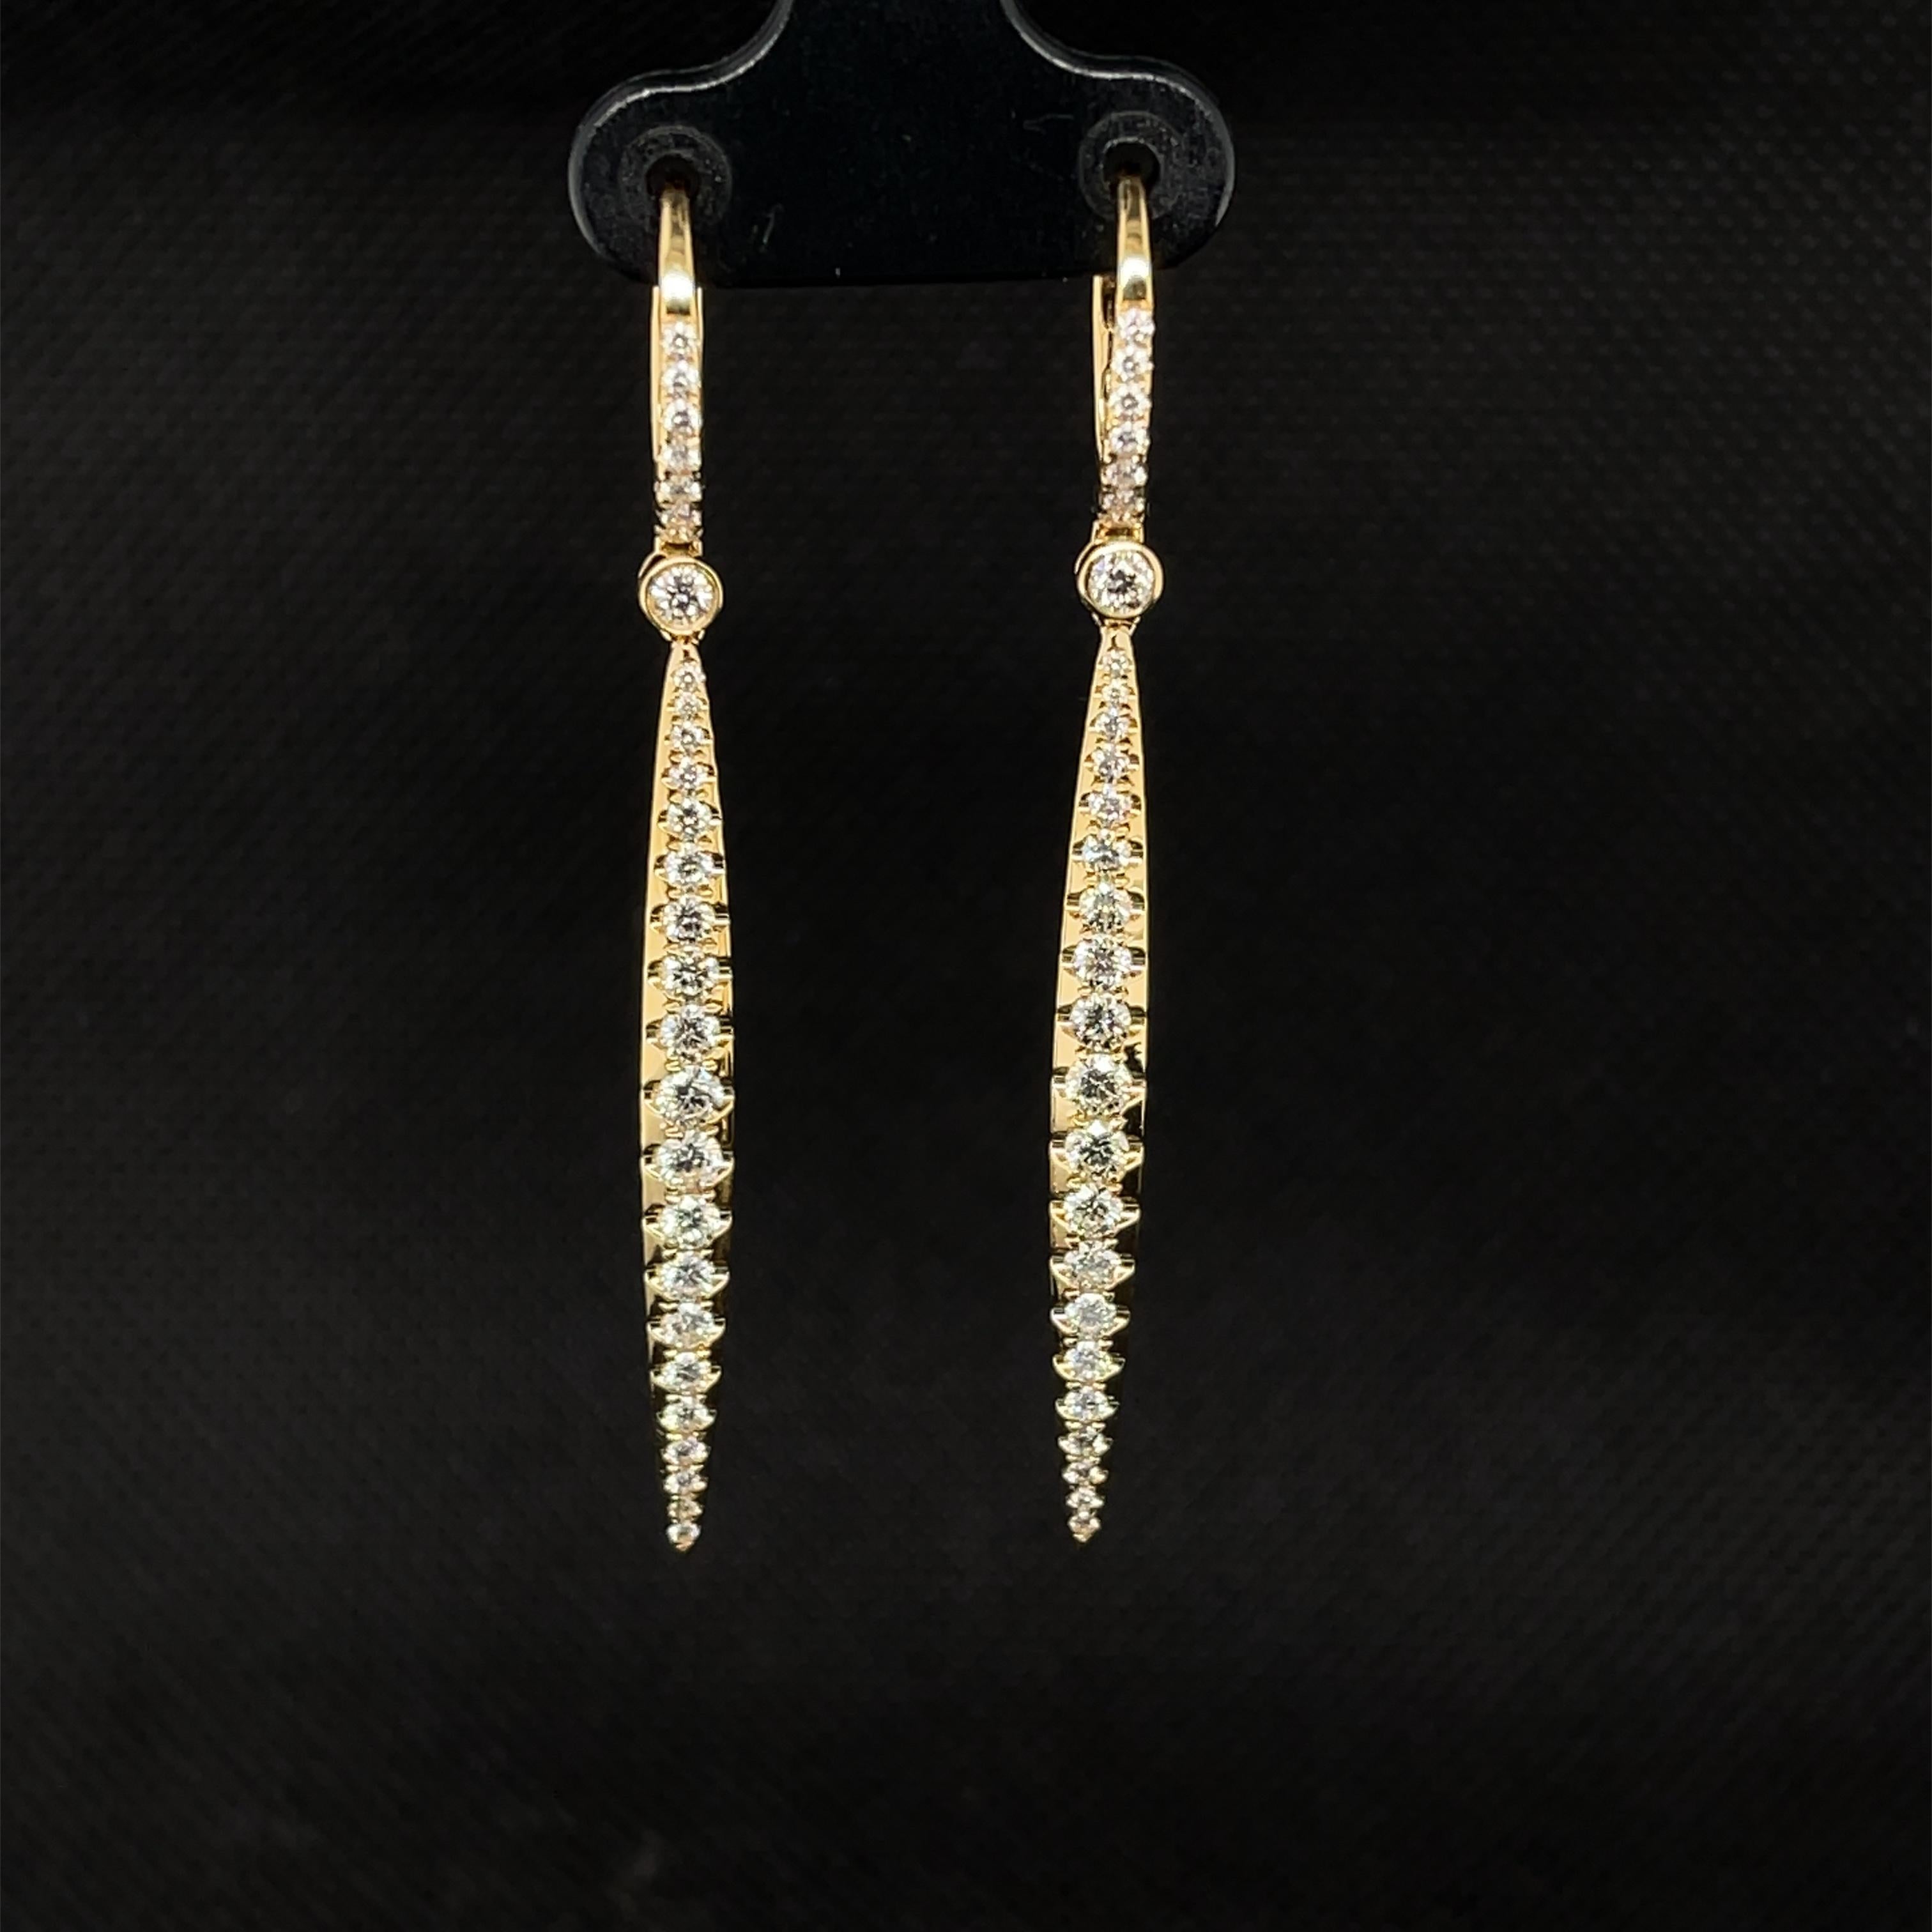 xp c gold earrings